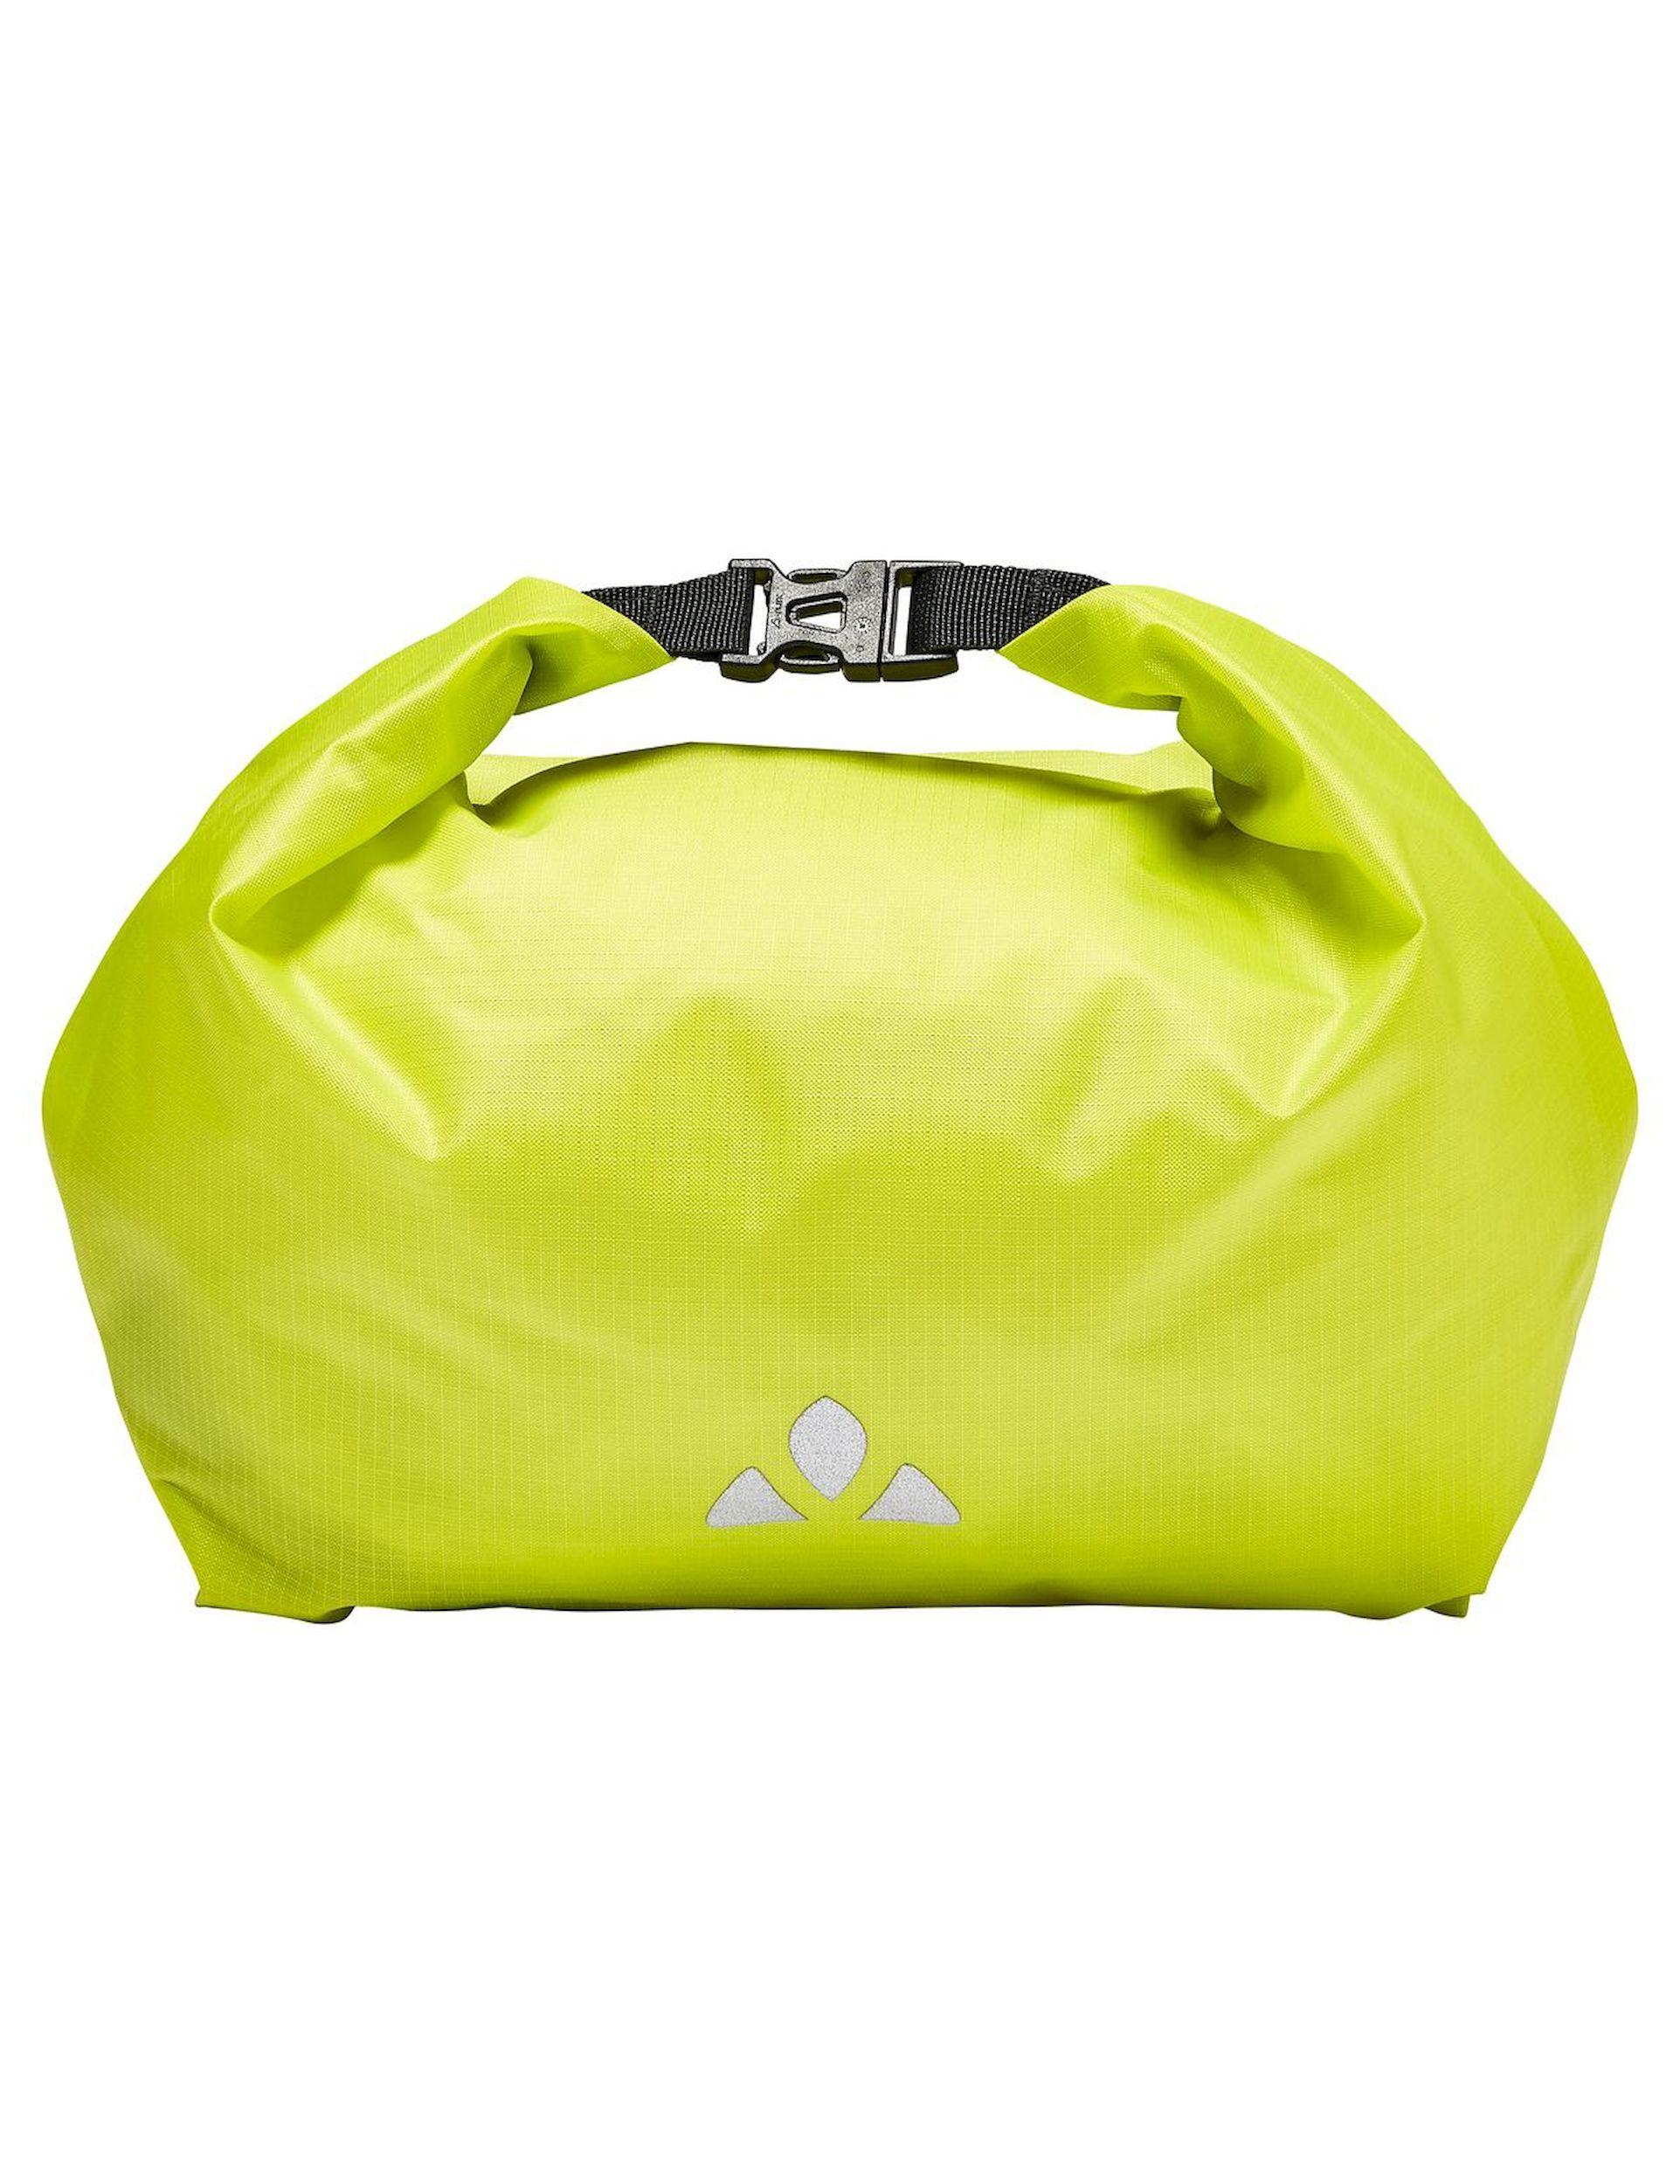 Vaude - Aqua Box Light - Cycling bag